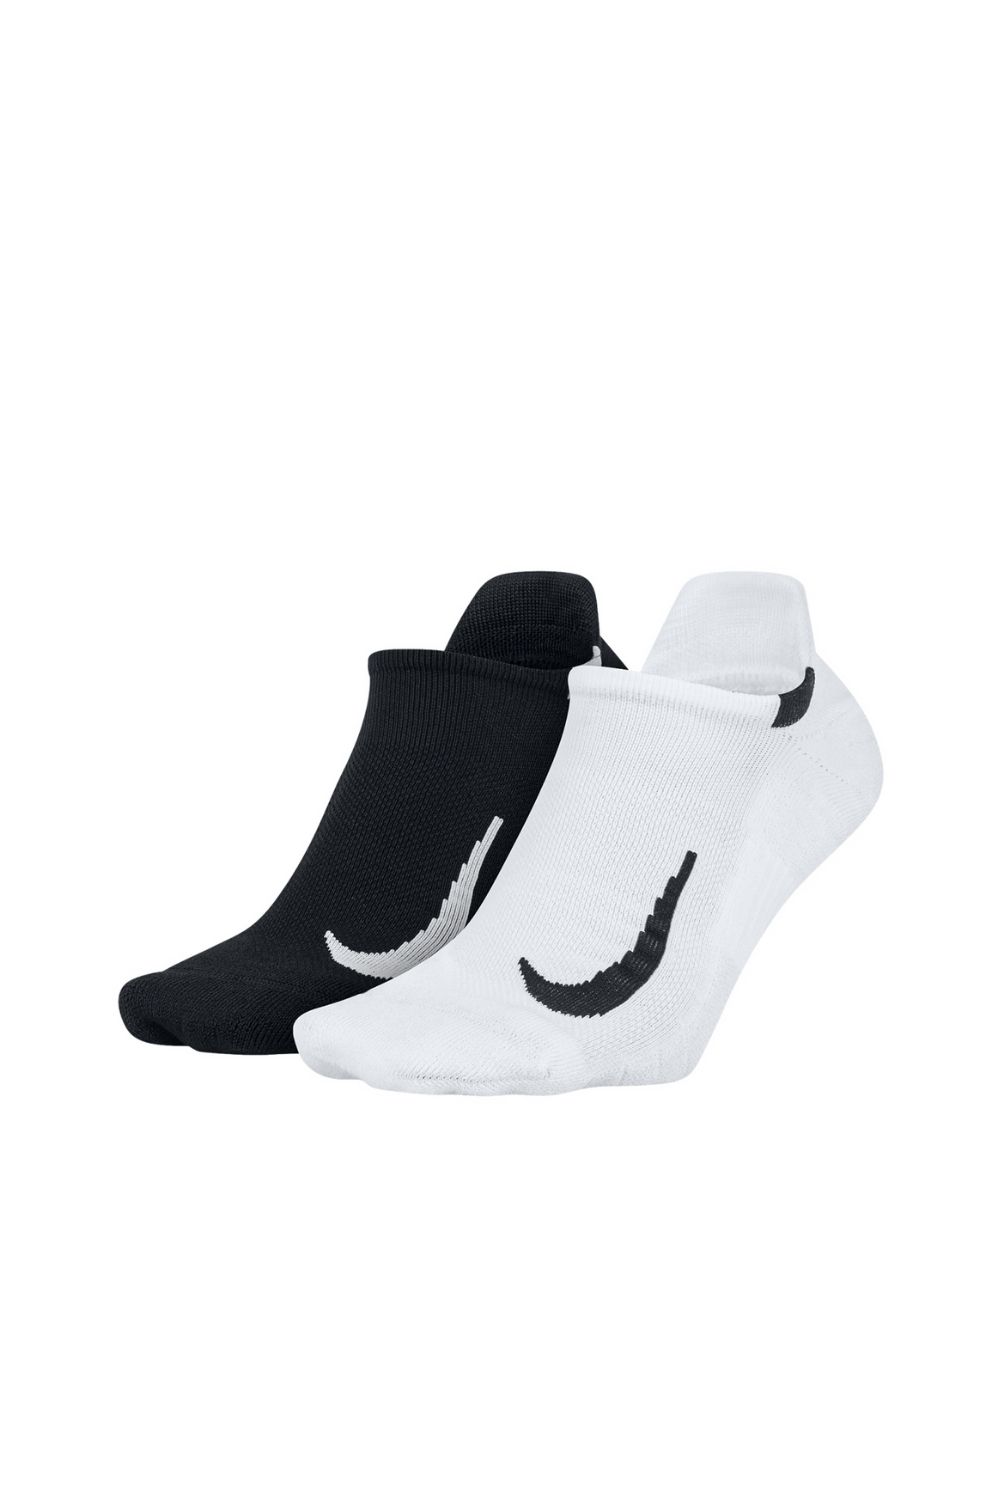 Γυναικεία/Αξεσουάρ/Κάλτσες NIKE - Unisex κάλτσες σετ των 2 NIKE Multiplier σετ των 2 λευκές μαύρες